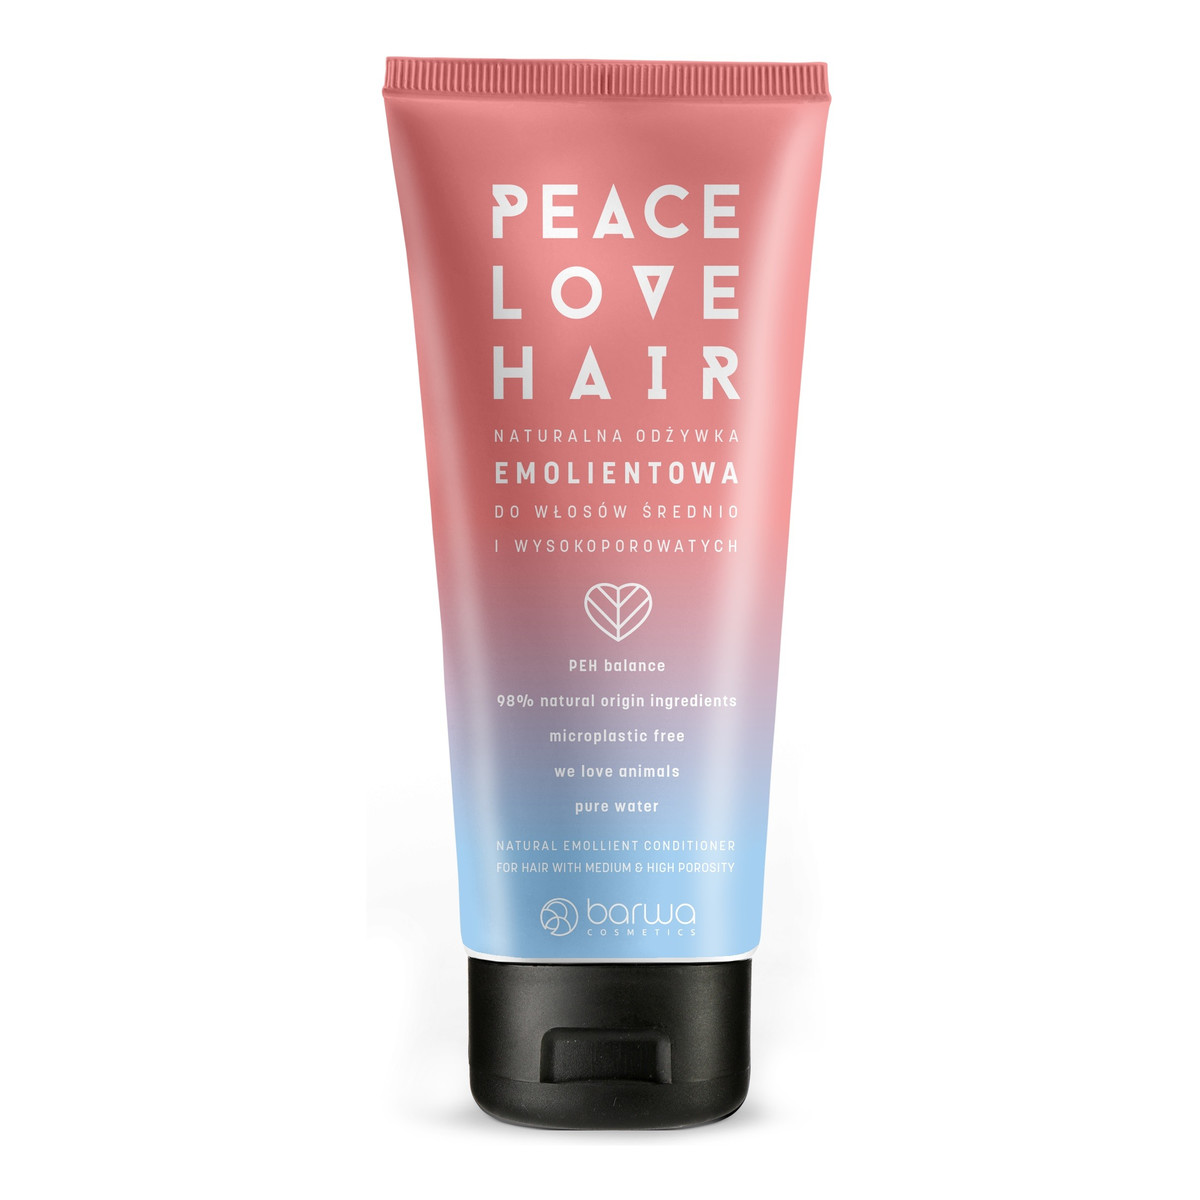 Barwa Peace Love Hair Naturalna Odżywka emolientowa do włosów średnio i wysokoporowatych 180ml